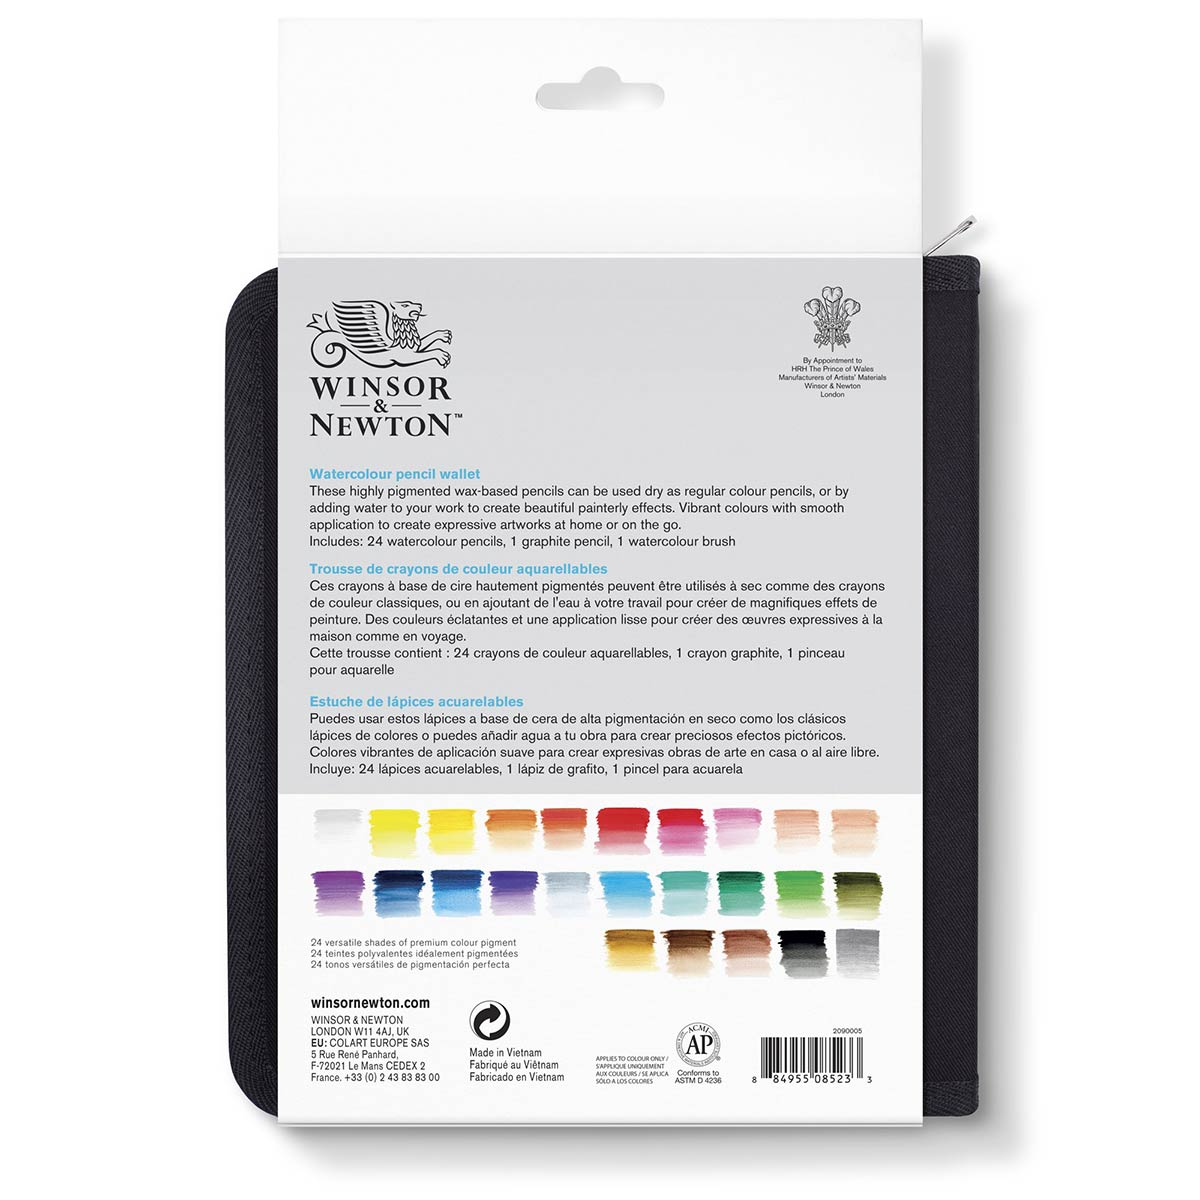 Winsor Newton - Studio Collection Watercolor Pencils Wallet Set